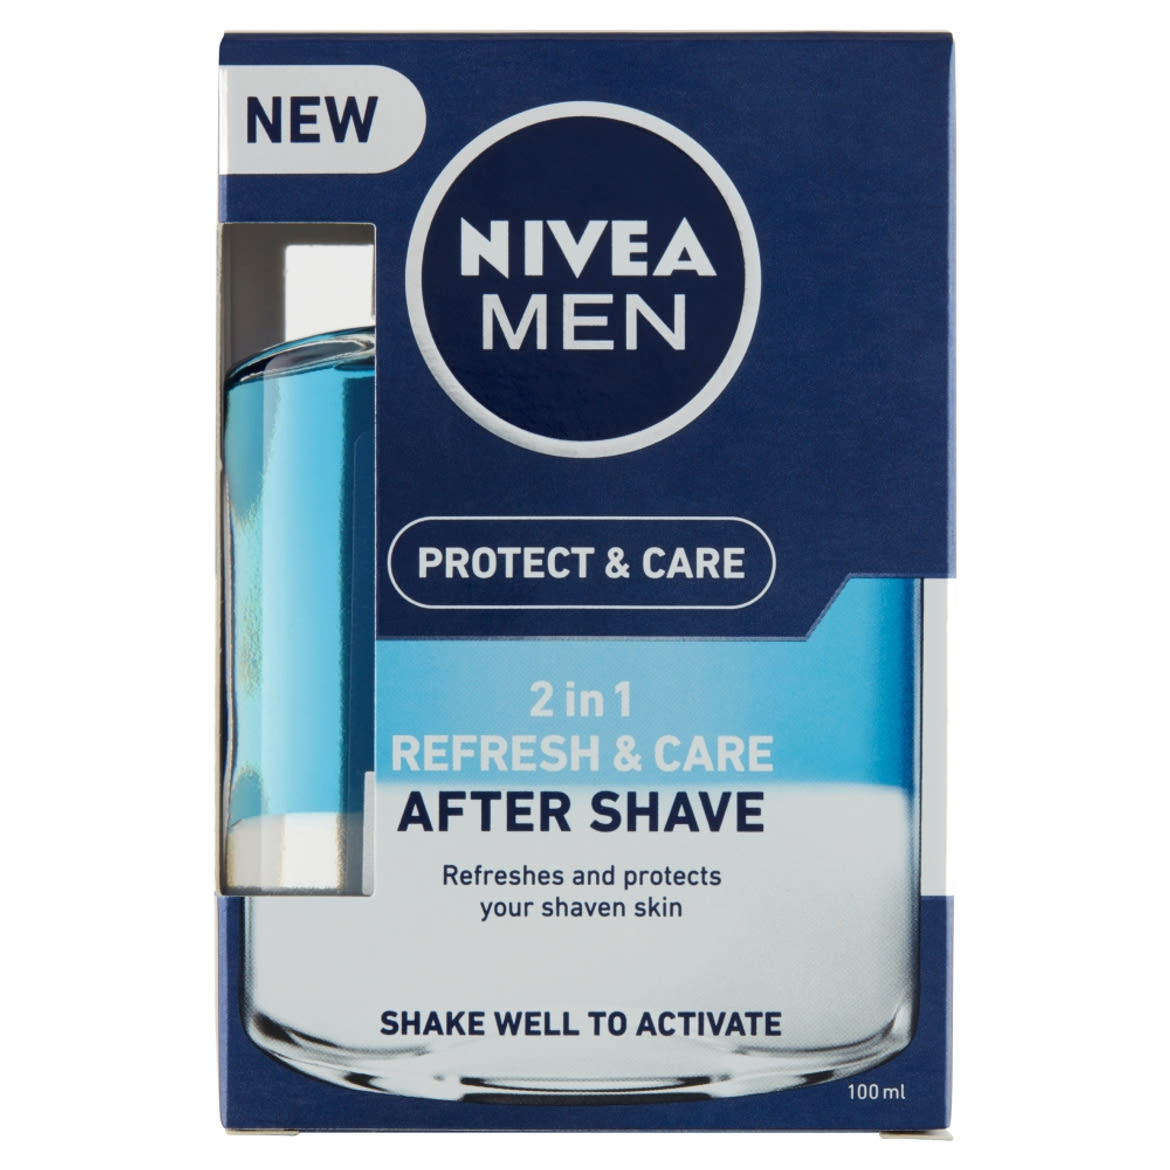 NIVEA MEN Protect & Care 2 in 1 Frissítő és Ápoló after shave lotion